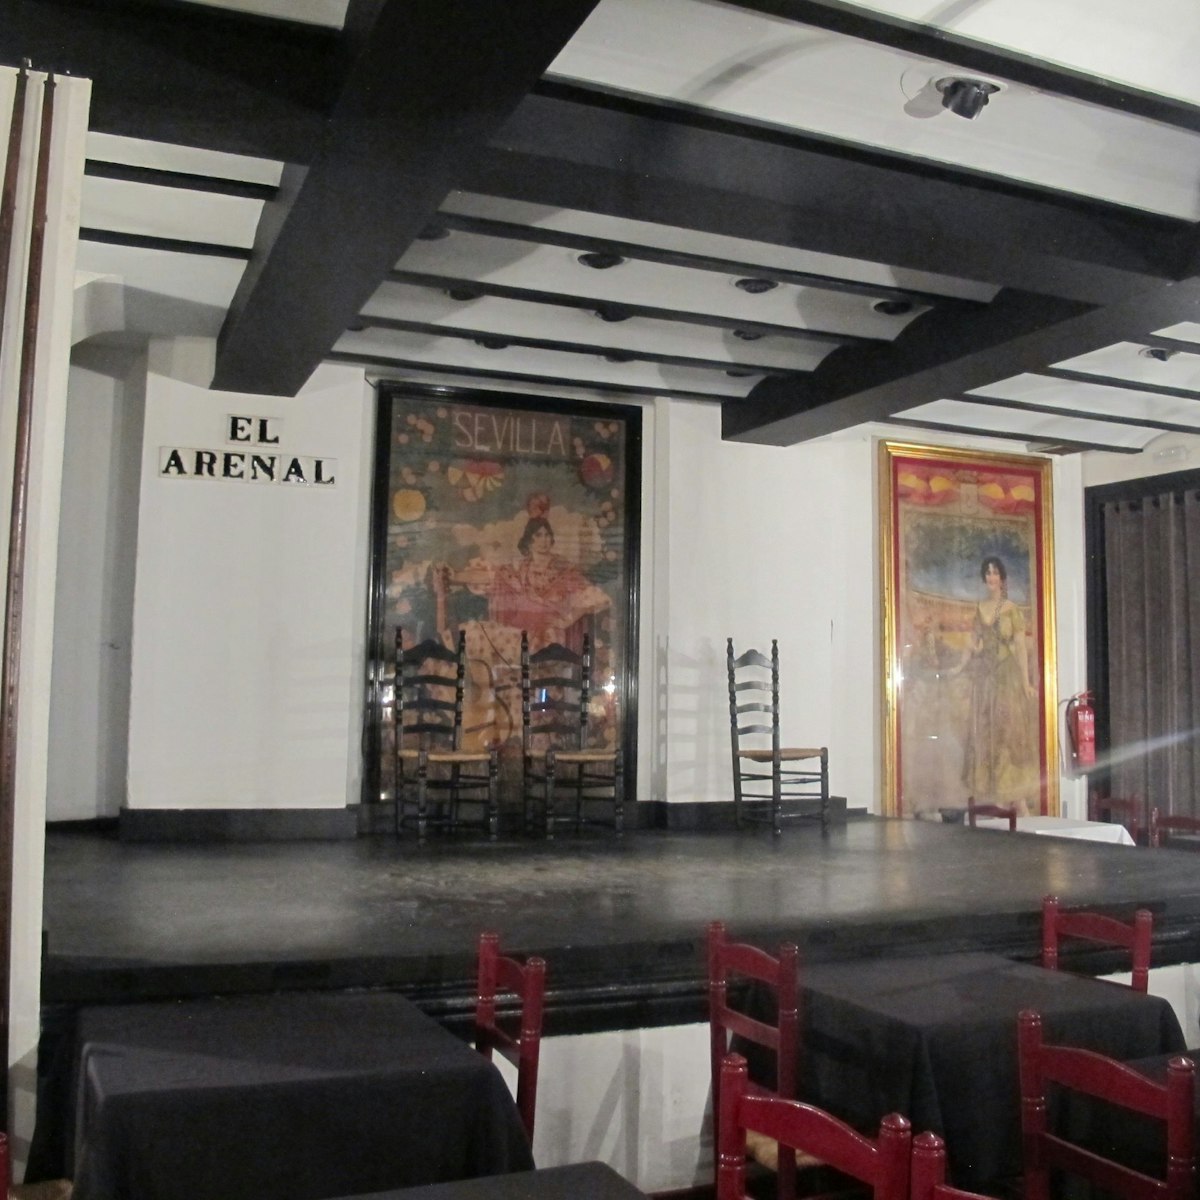 Tablao El Arenal flamenco stage